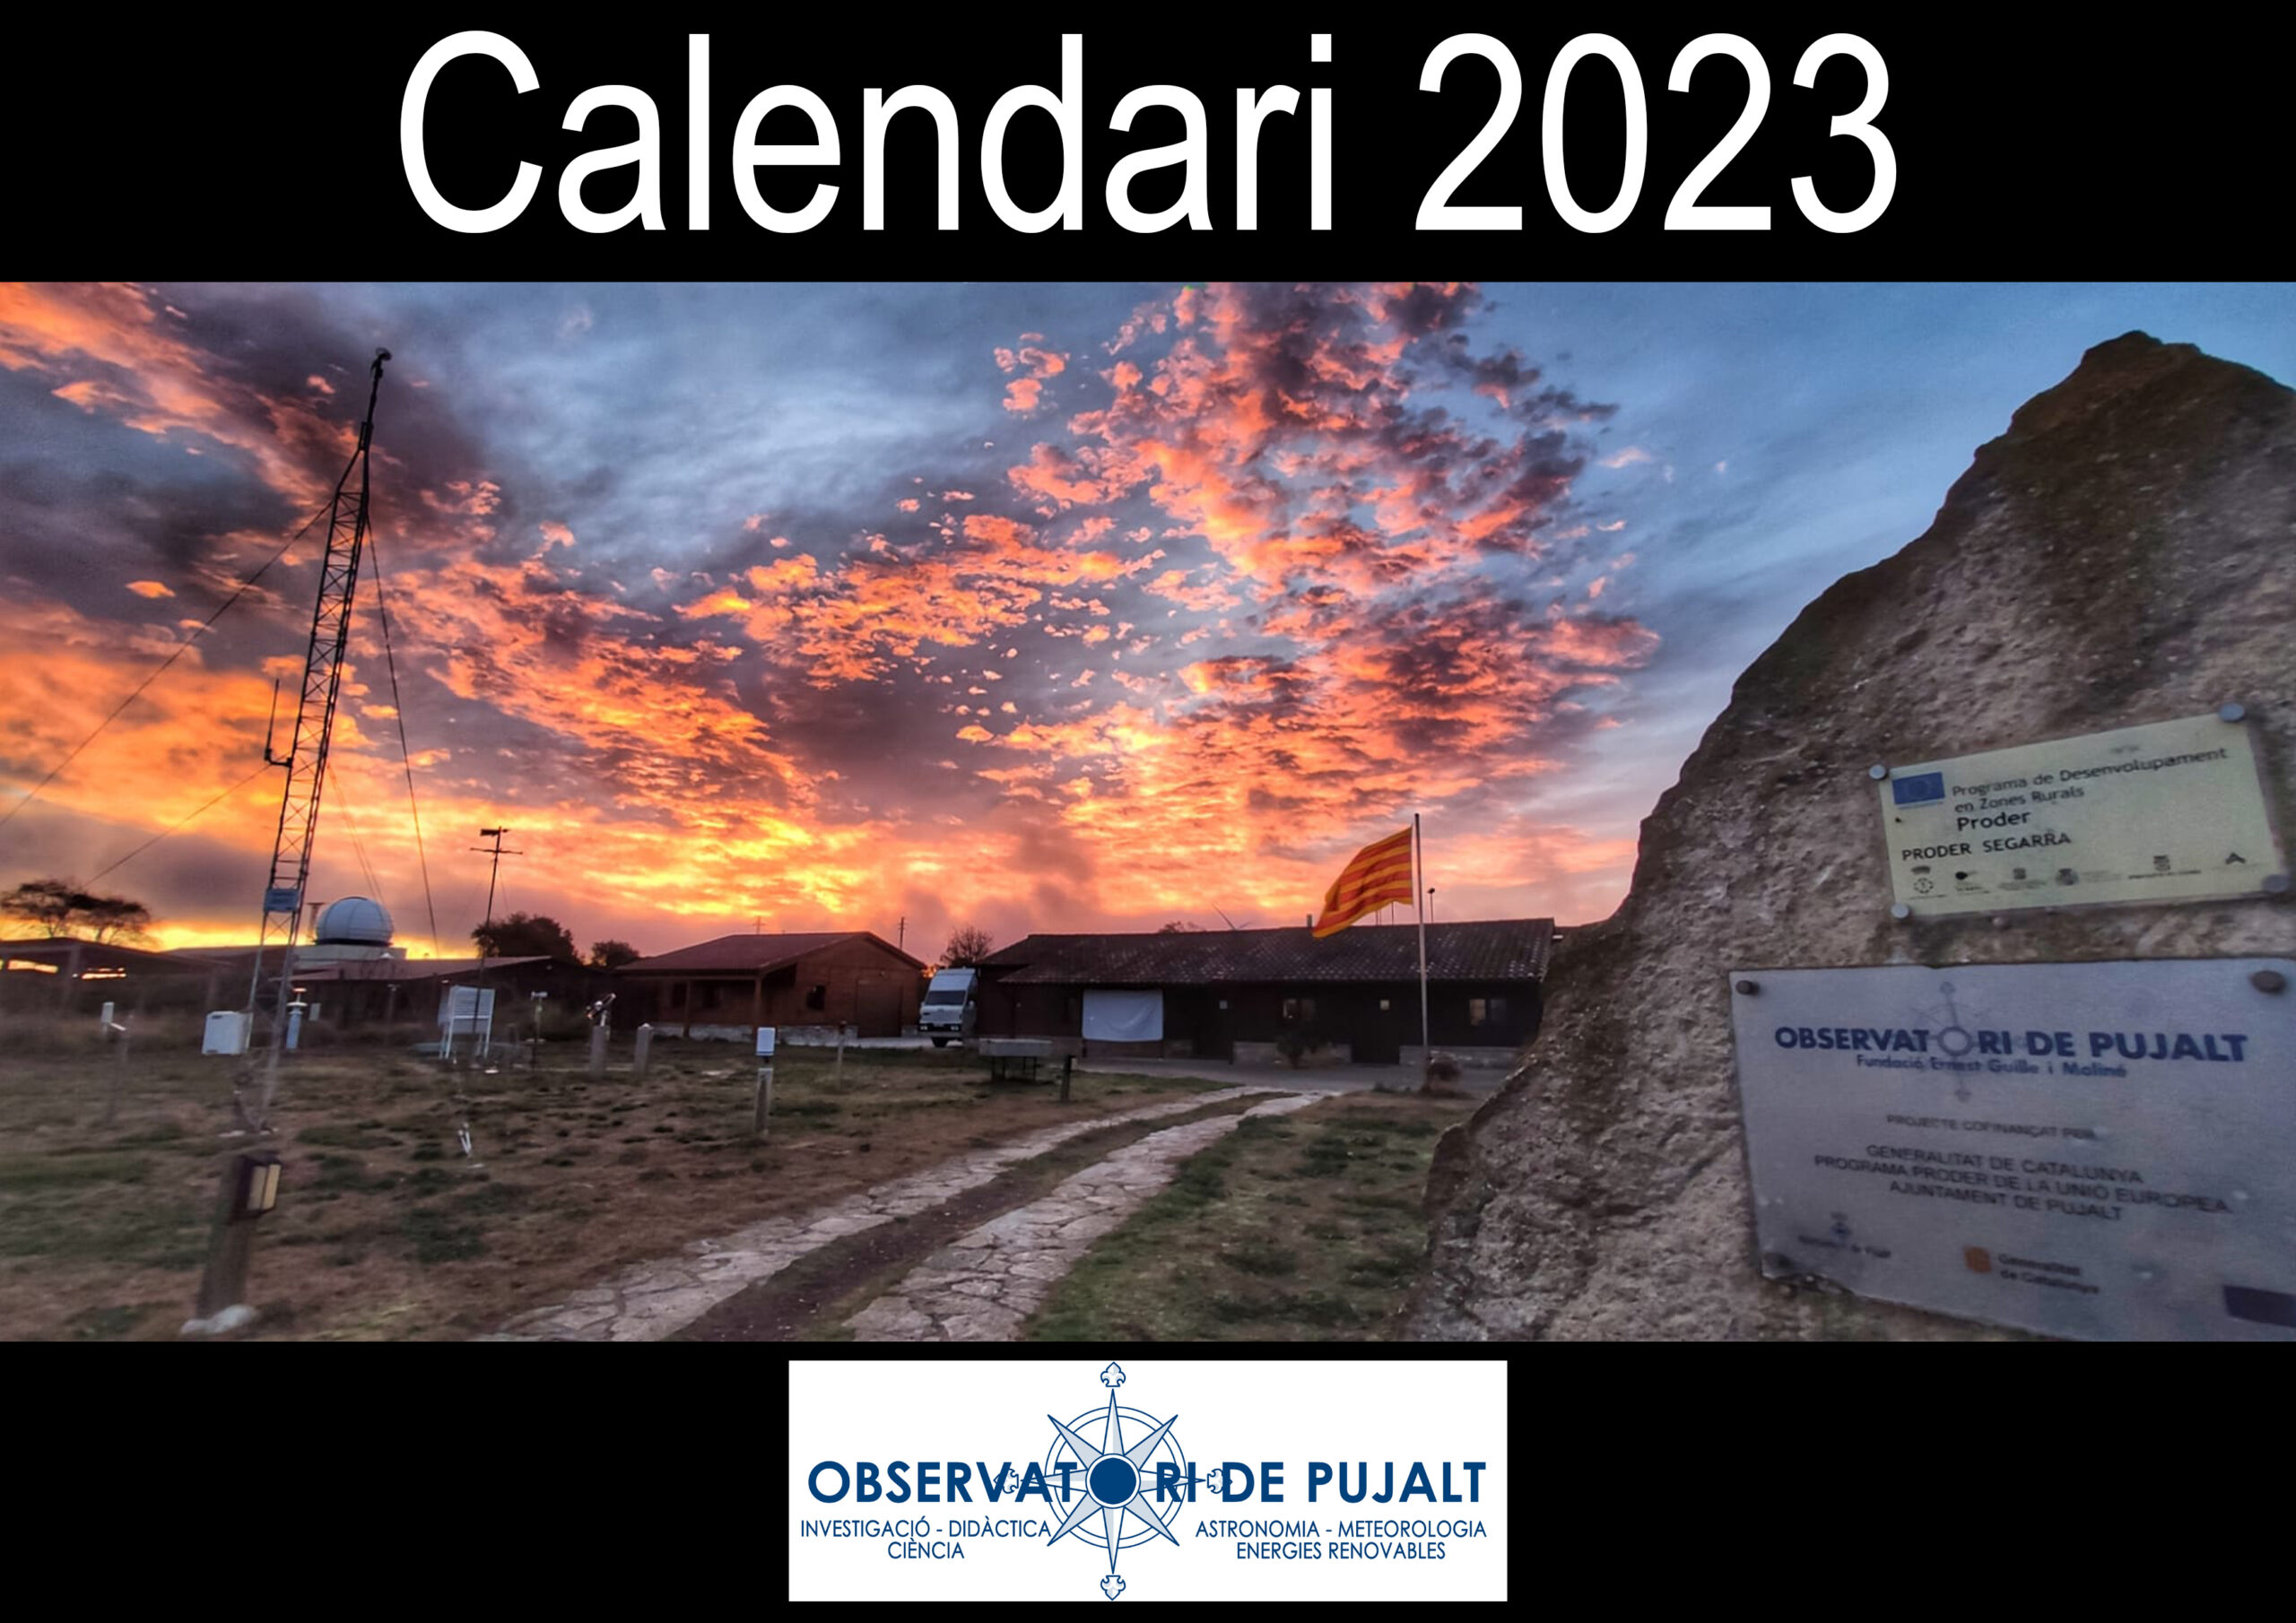 Calendari 2023 – Observatori de Pujalt